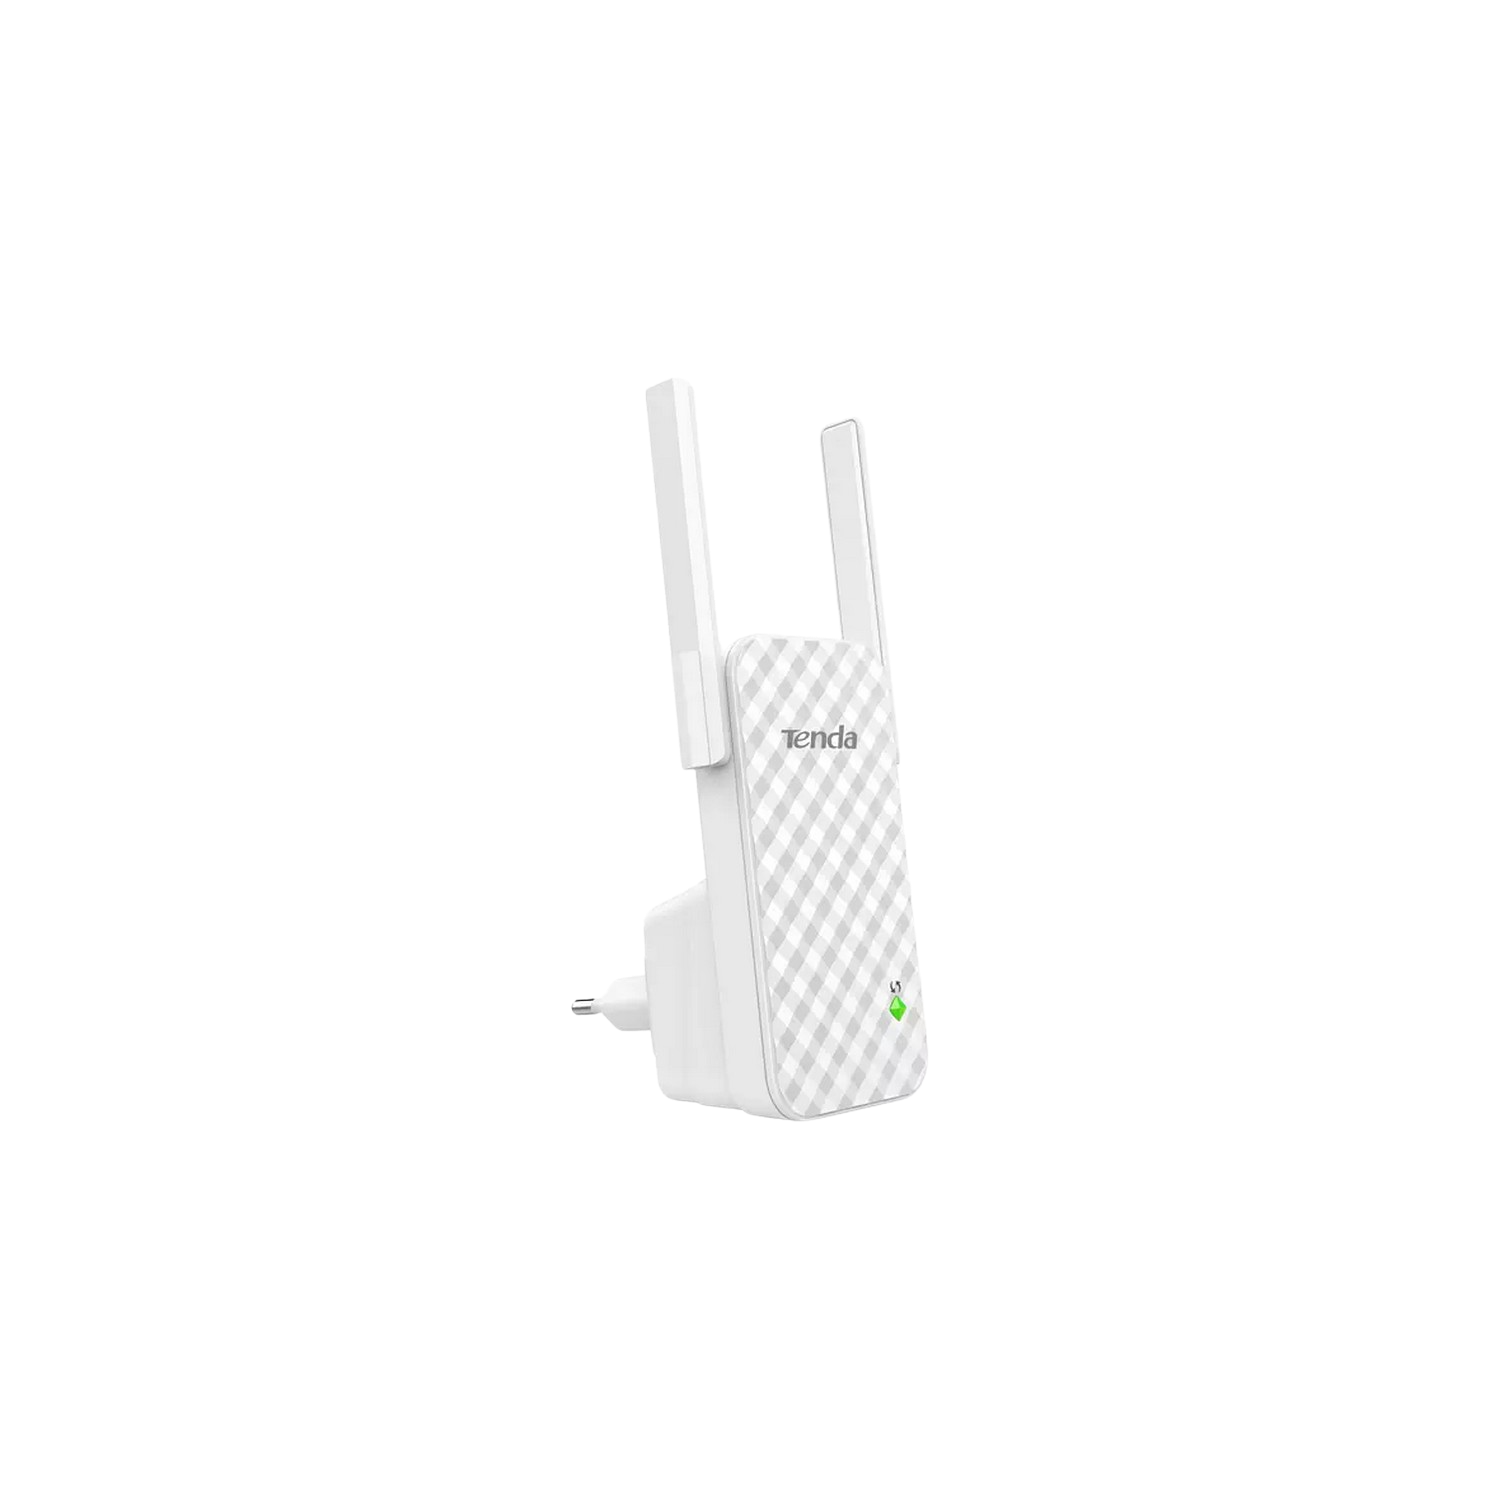 Tenda A9 Extensor de alcance universal n300 repetidor red wireless wifi 300mbps cobertura 150m² blanco 300mbits señal amplificador 2x 3dbi antenas compatible con cualquier router 802.11bgn extender ampliardor 300 duales para casa grande officina